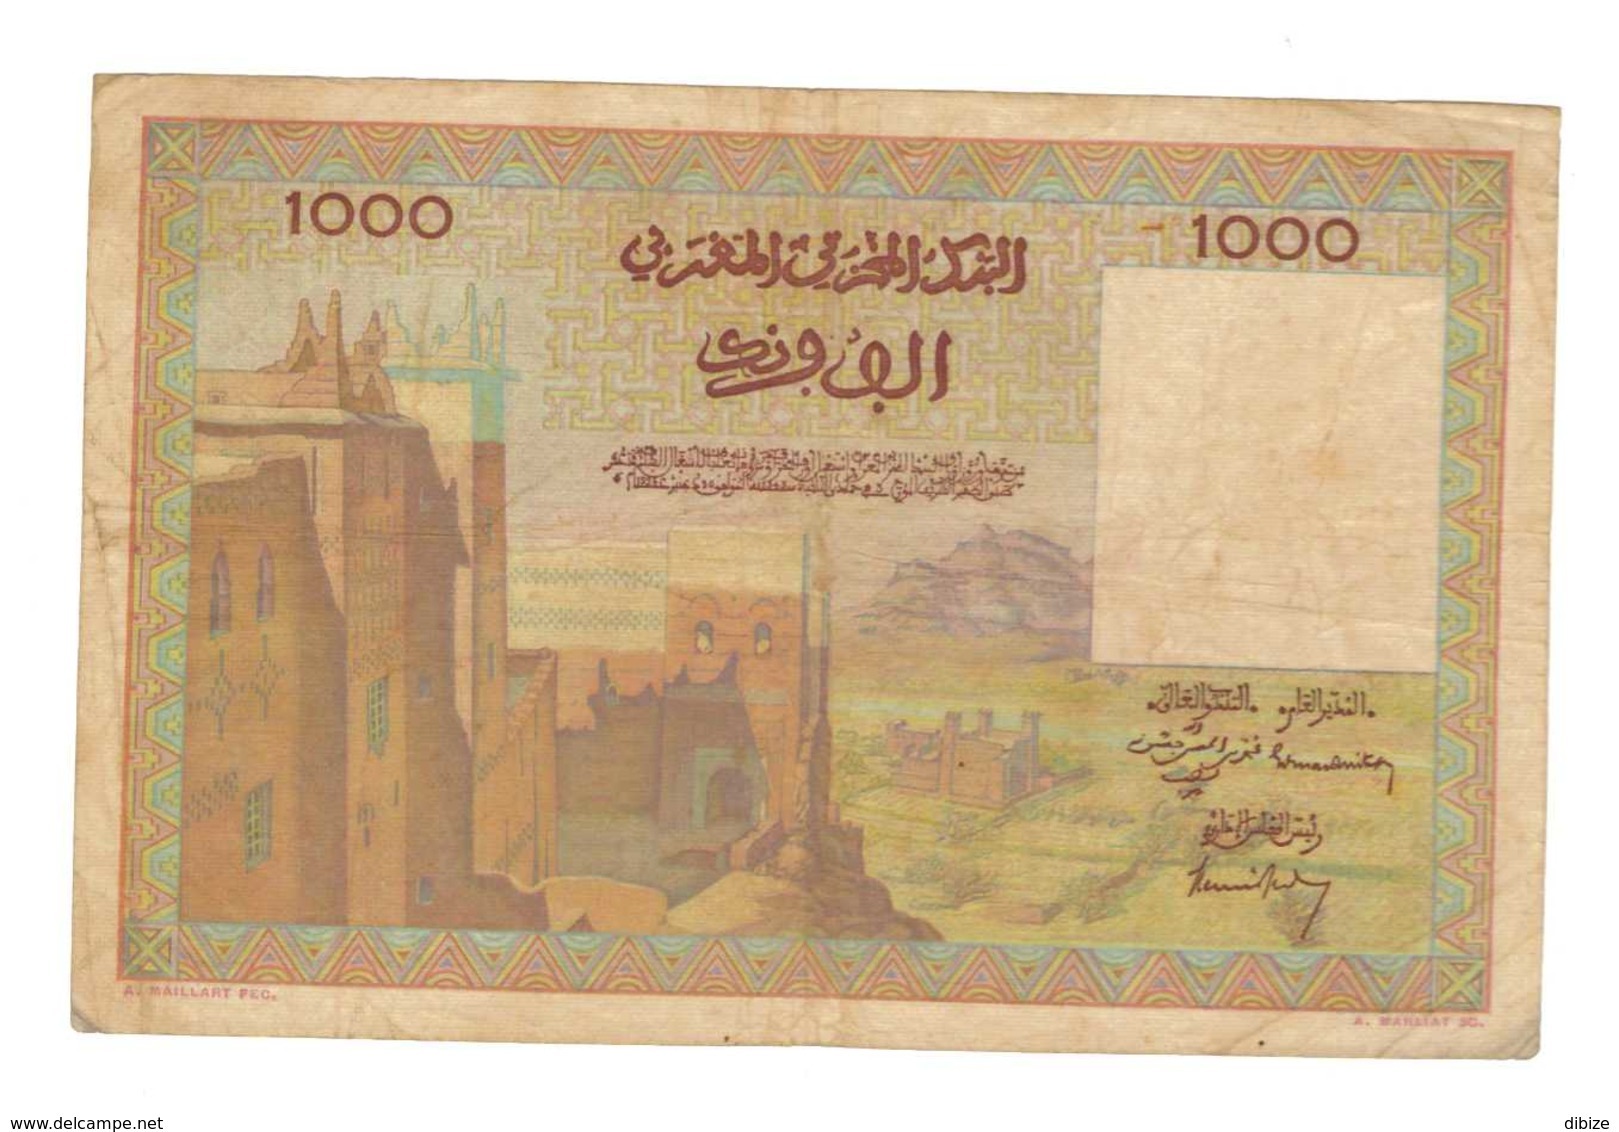 Maroc. Protectorat Français. Billet De 1000 Francs Du 15-11-1956. Etat Moyen. - Marokko